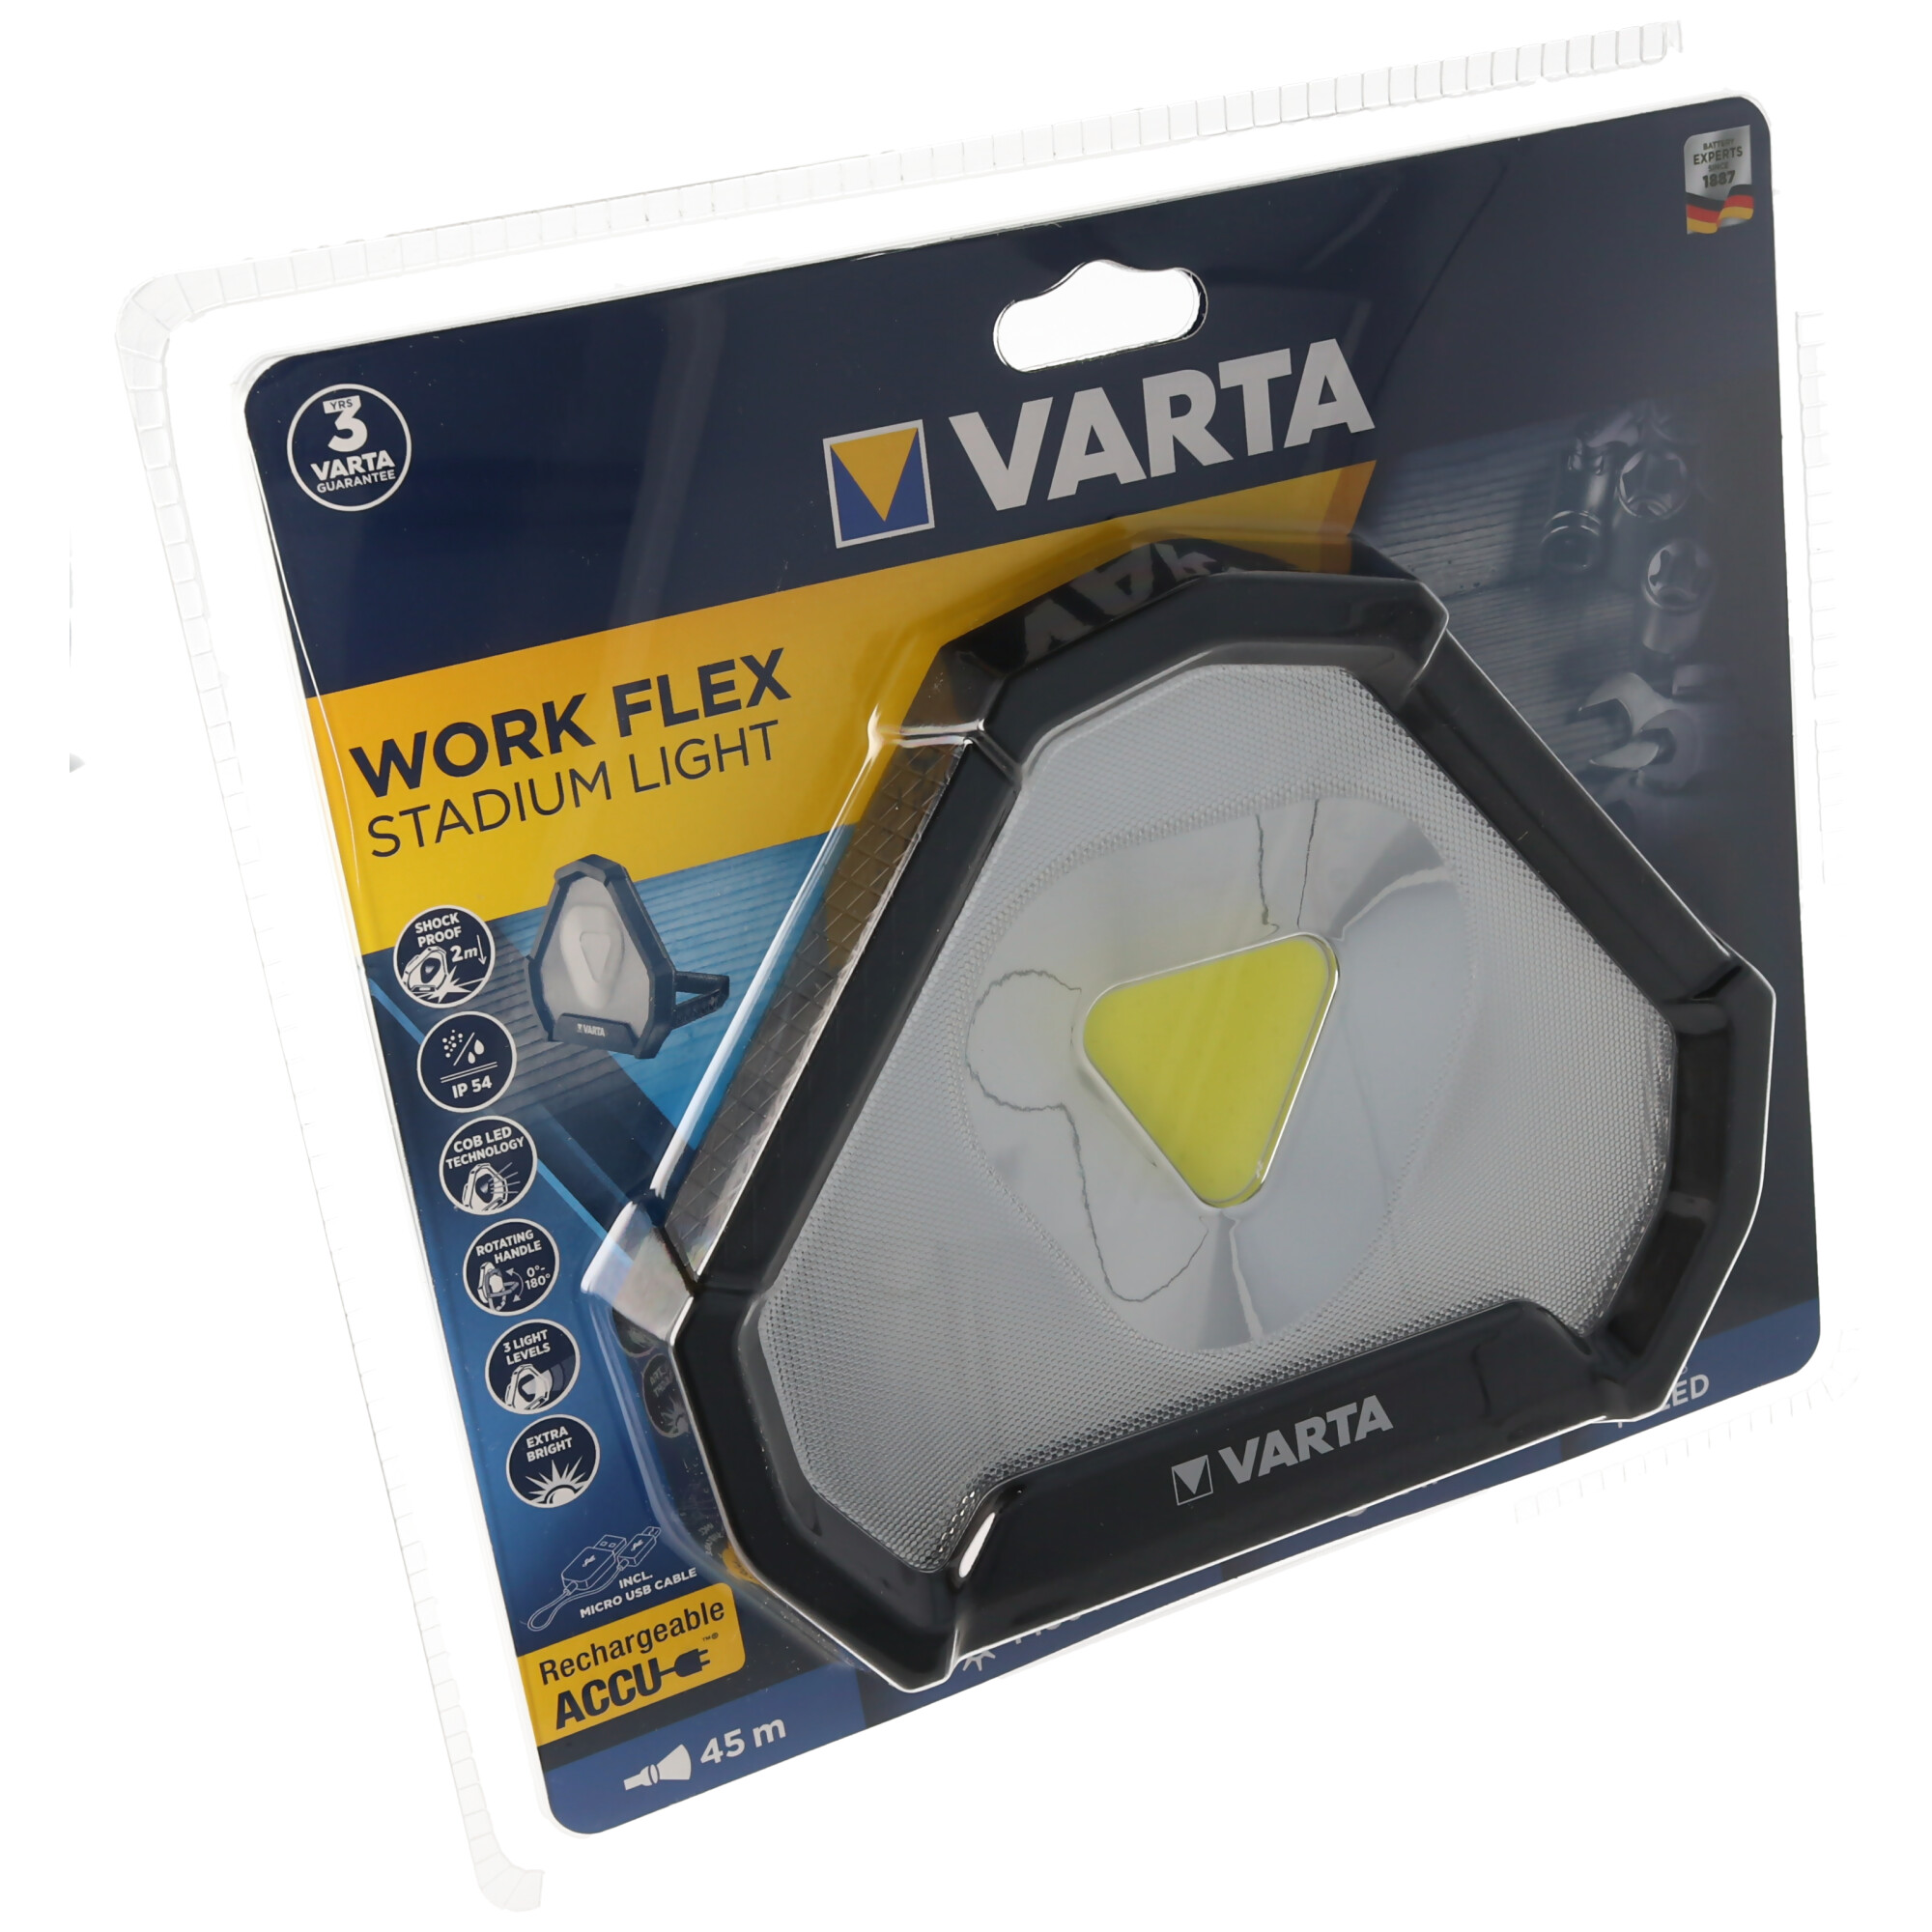 Varta Work Flex Stadium Light inklusive Akku und Ladekabel